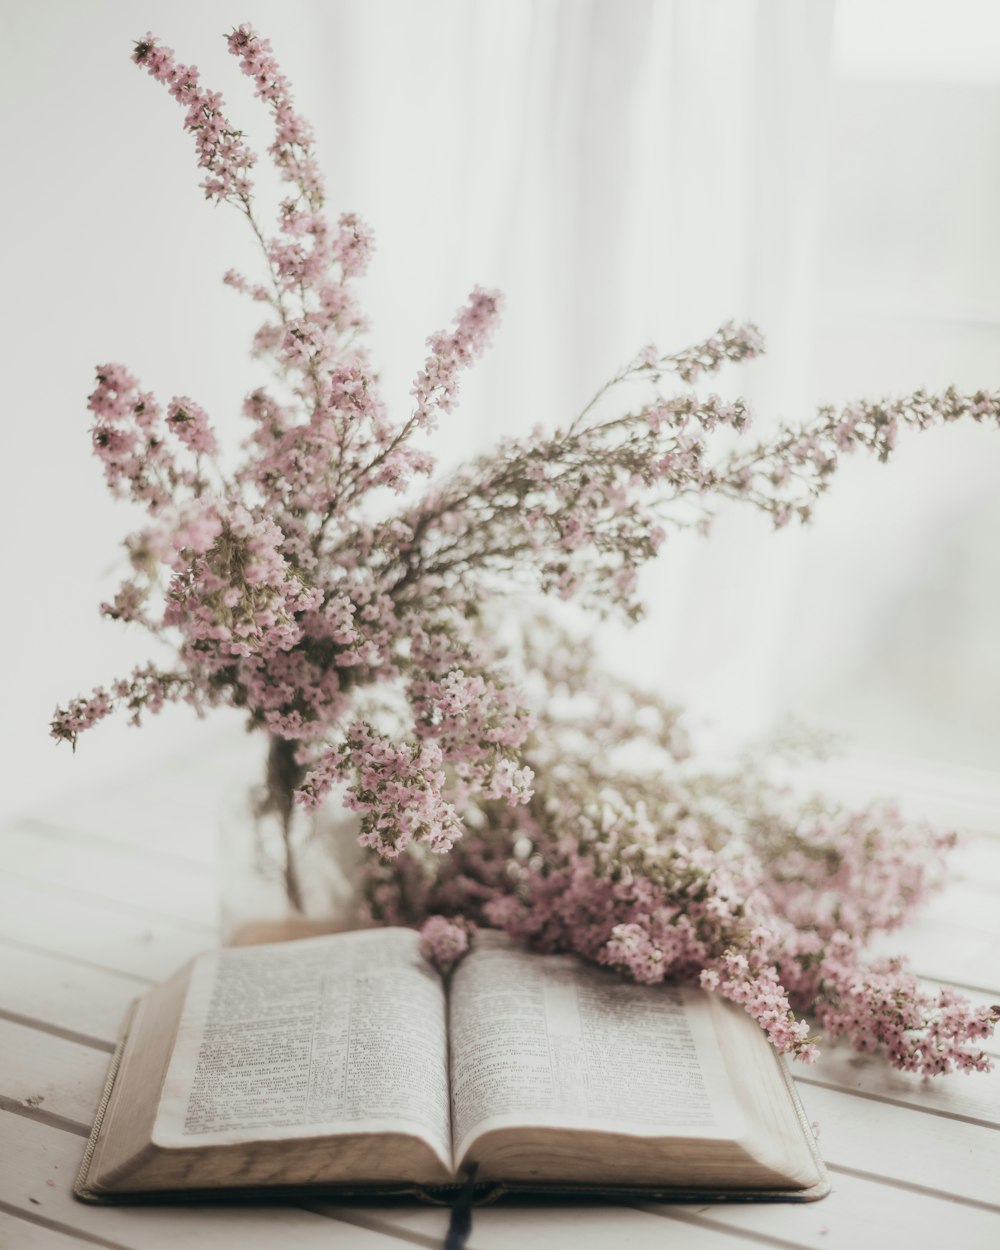 Un libro abierto sentado encima de una mesa junto a un ramo de flores